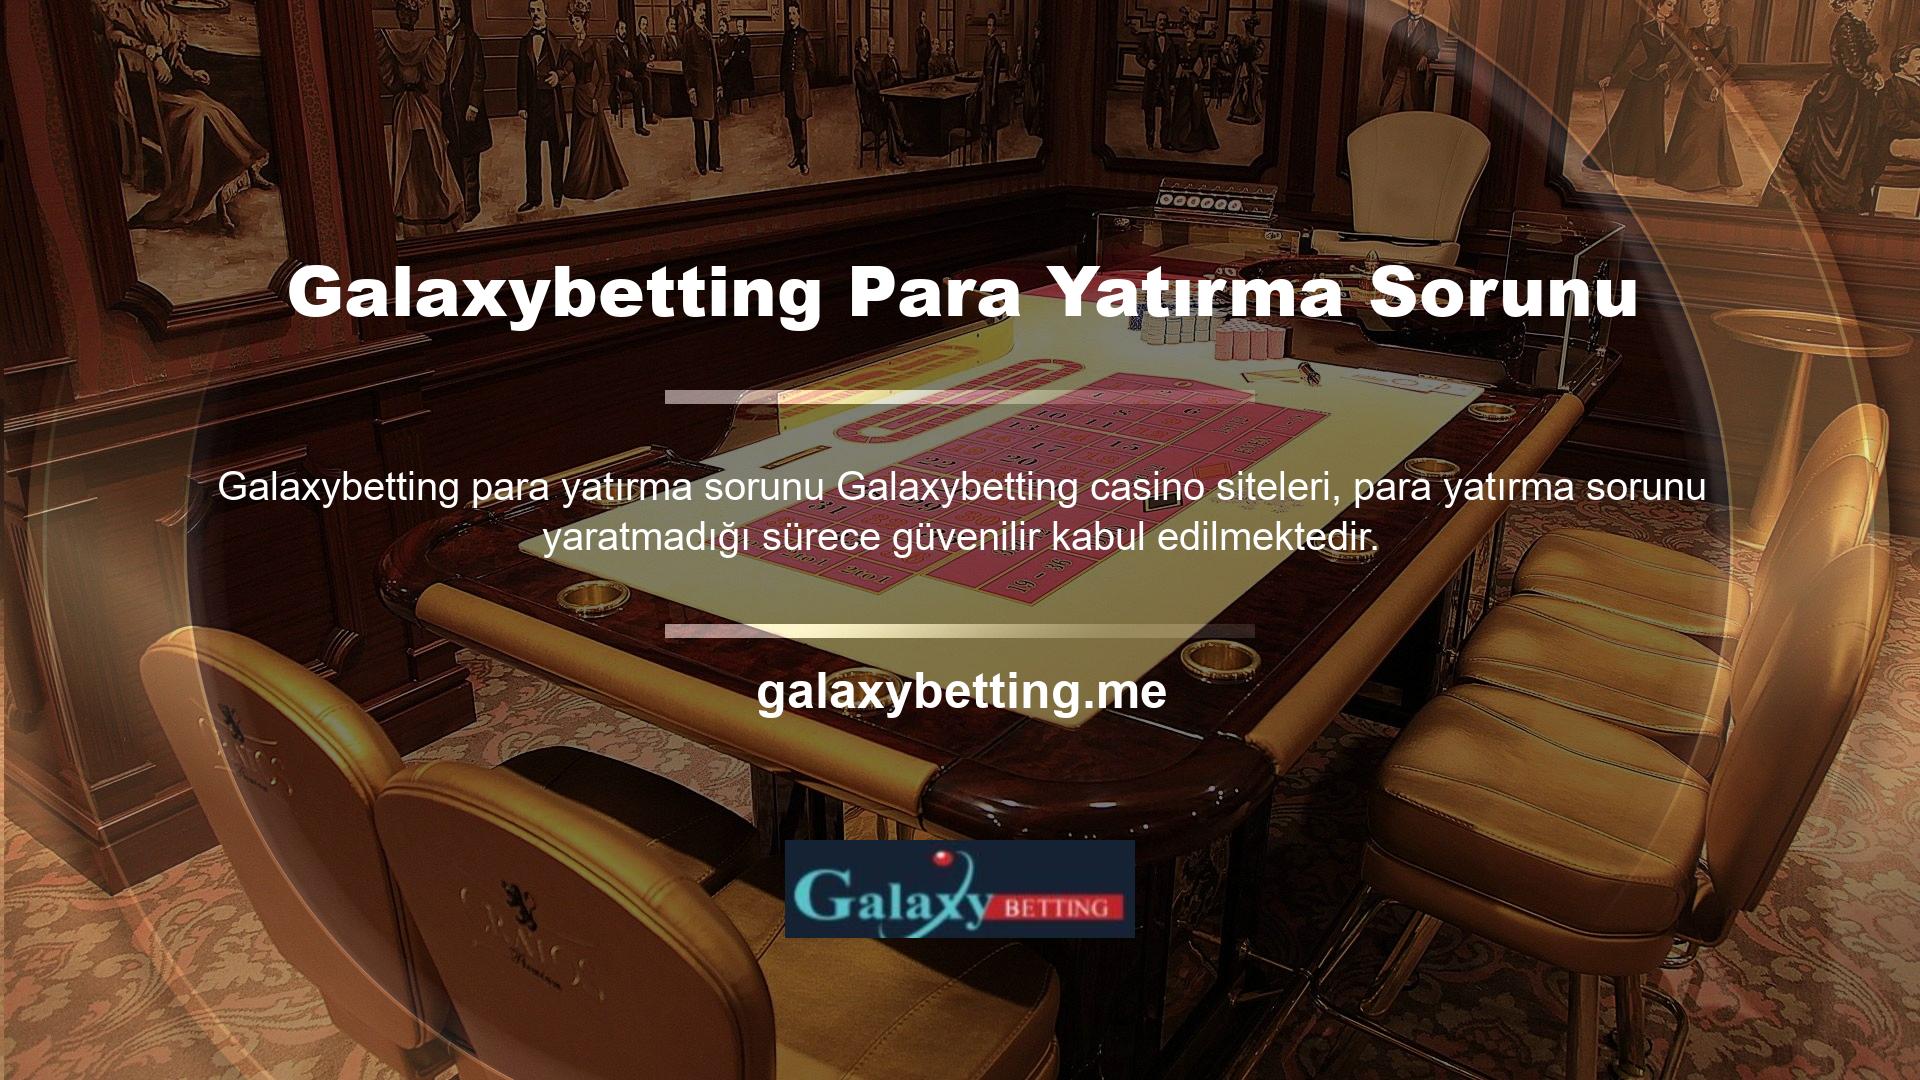 Galaxybetting online casino ve para yatırma casino siteleri, para yatırma sorunu yaratmadığı sürece güvenilir kabul edilmektedir